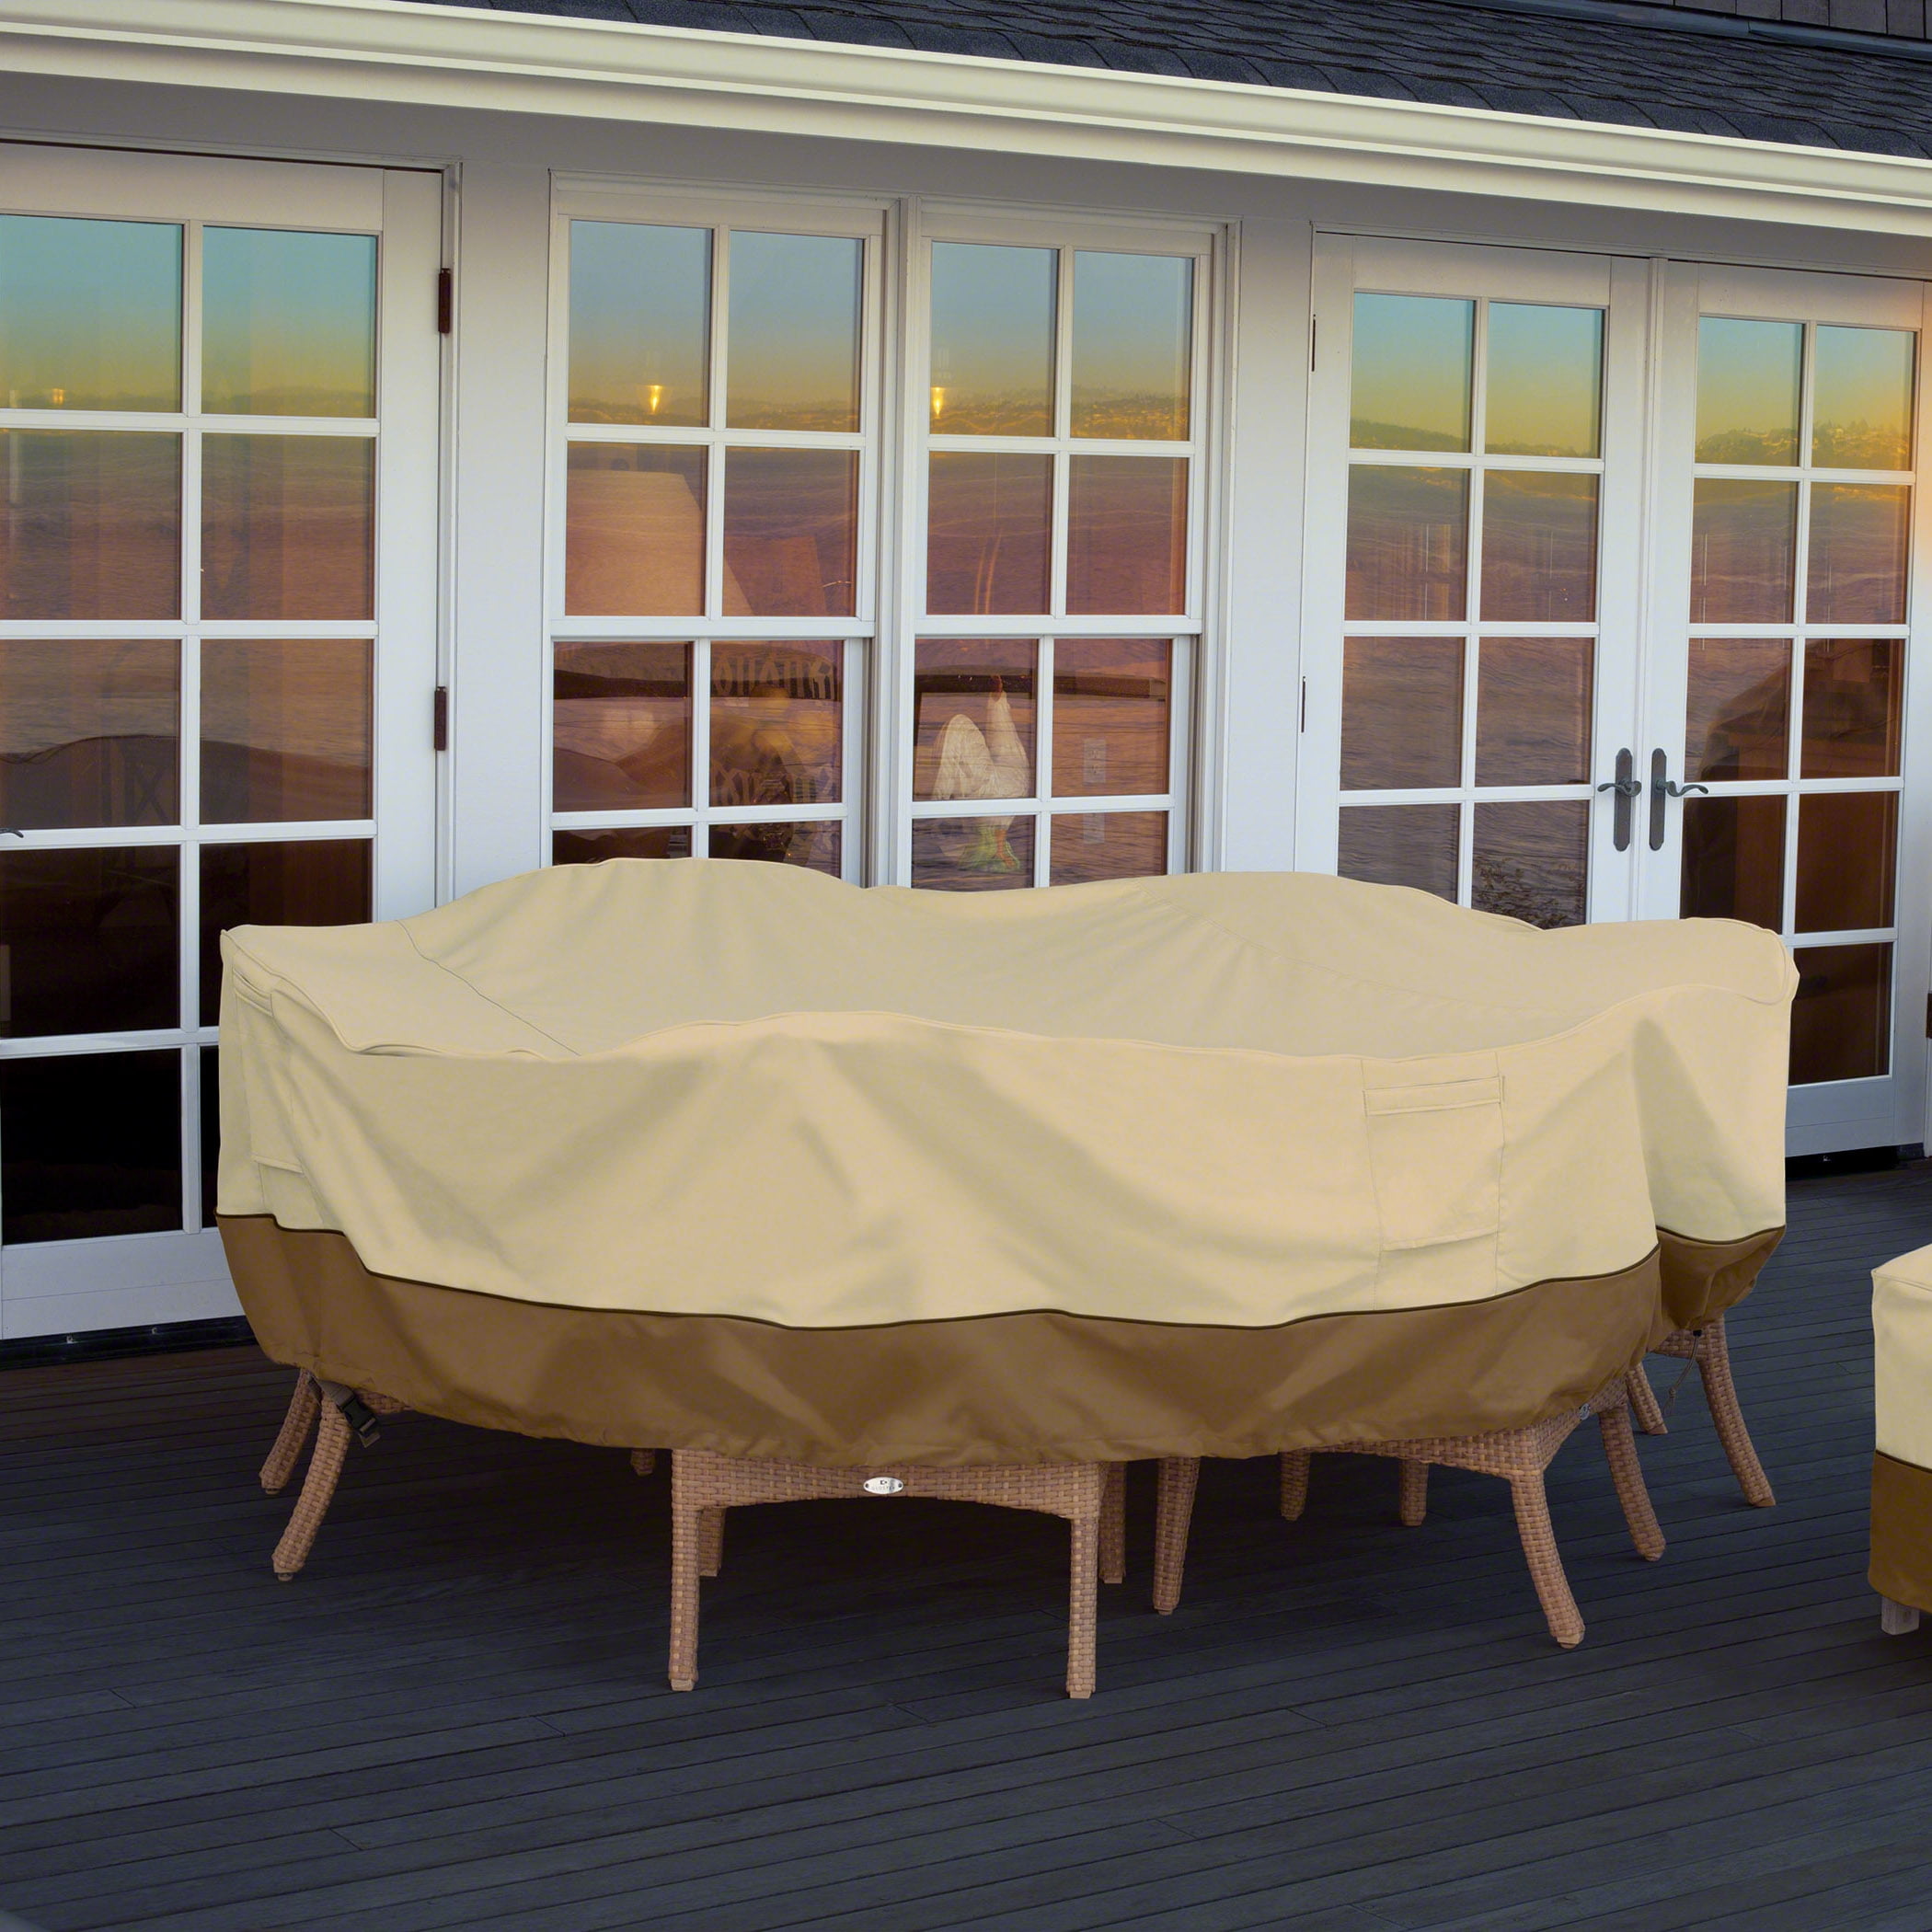 Classic Accessories Veranda Rectangular/Oval Patio Table & Chair Set Cover Medium 